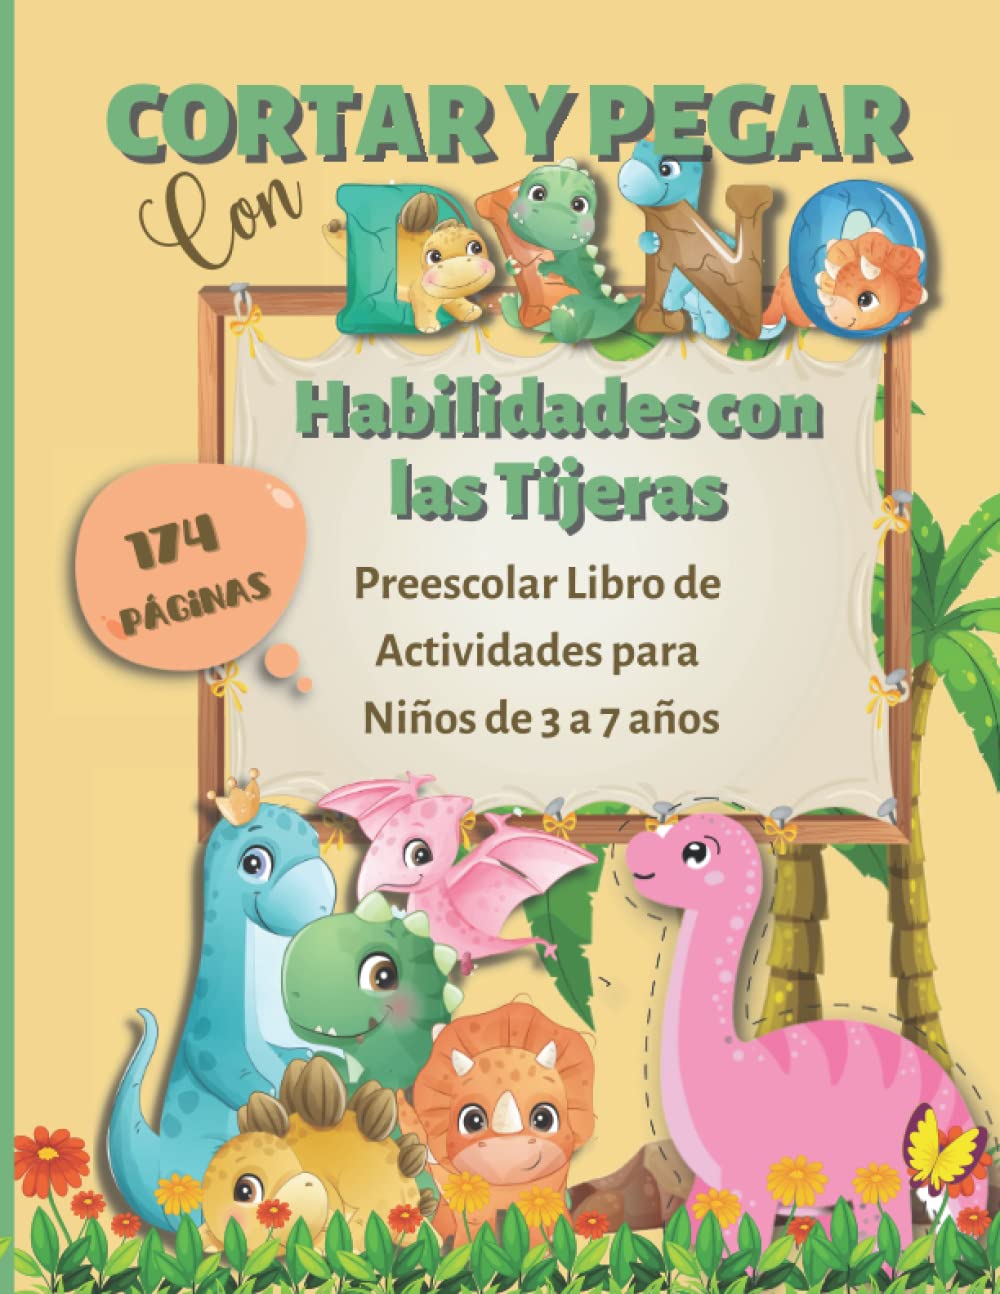 Libro: Cortar y Pegar con Dino, Habilidades con las Tijeras - Preescolar Libro de Actividades para Niños de 3 a 7 años por Monica F